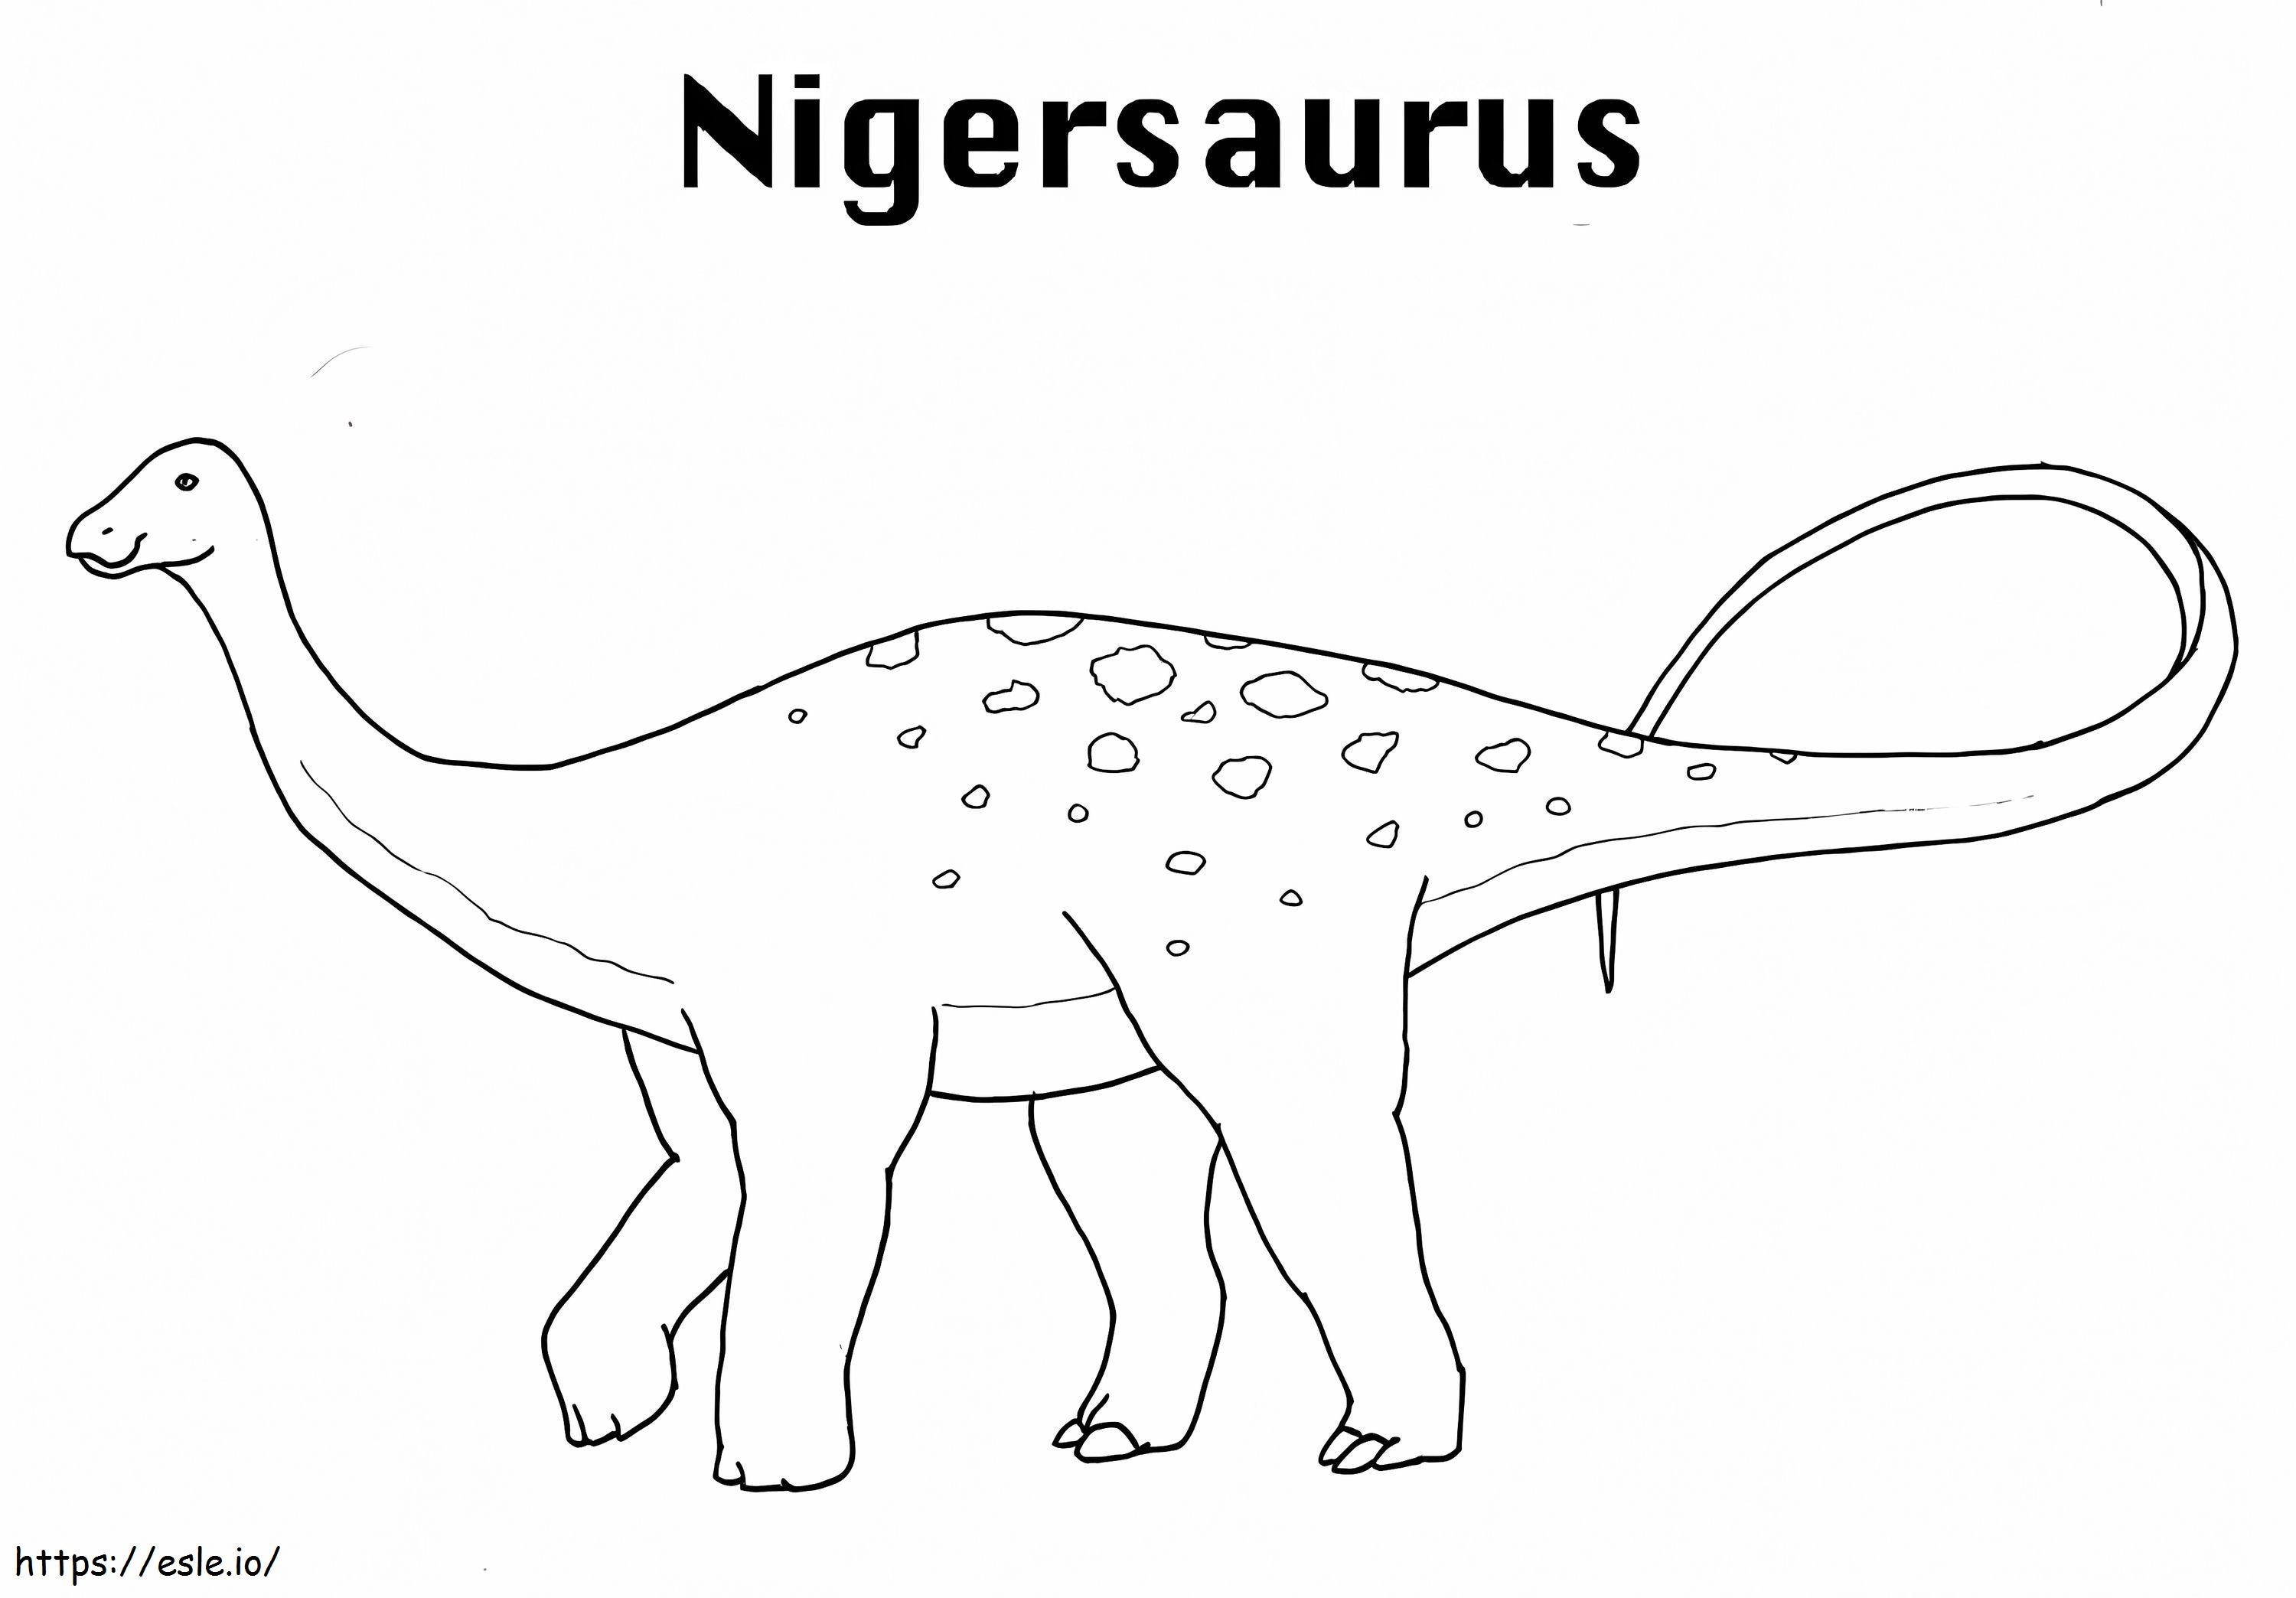 Nigersaurus-Dinosaurier ausmalbilder